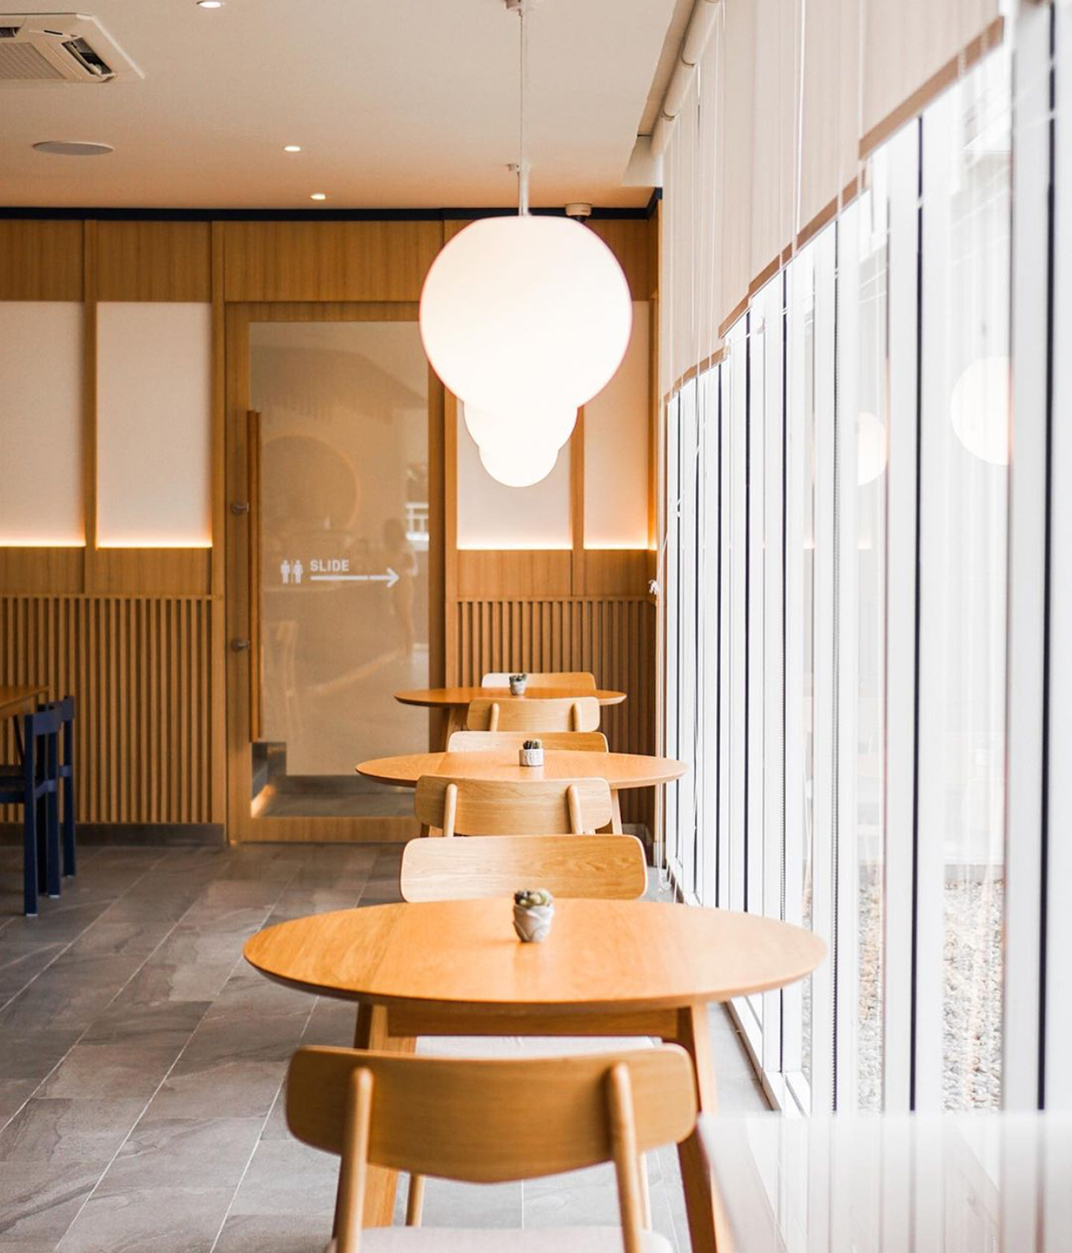 咖啡馆Curious Cafe 泰国 曼谷 咖啡馆 蓝色 格栅 logo设计 vi设计 空间设计